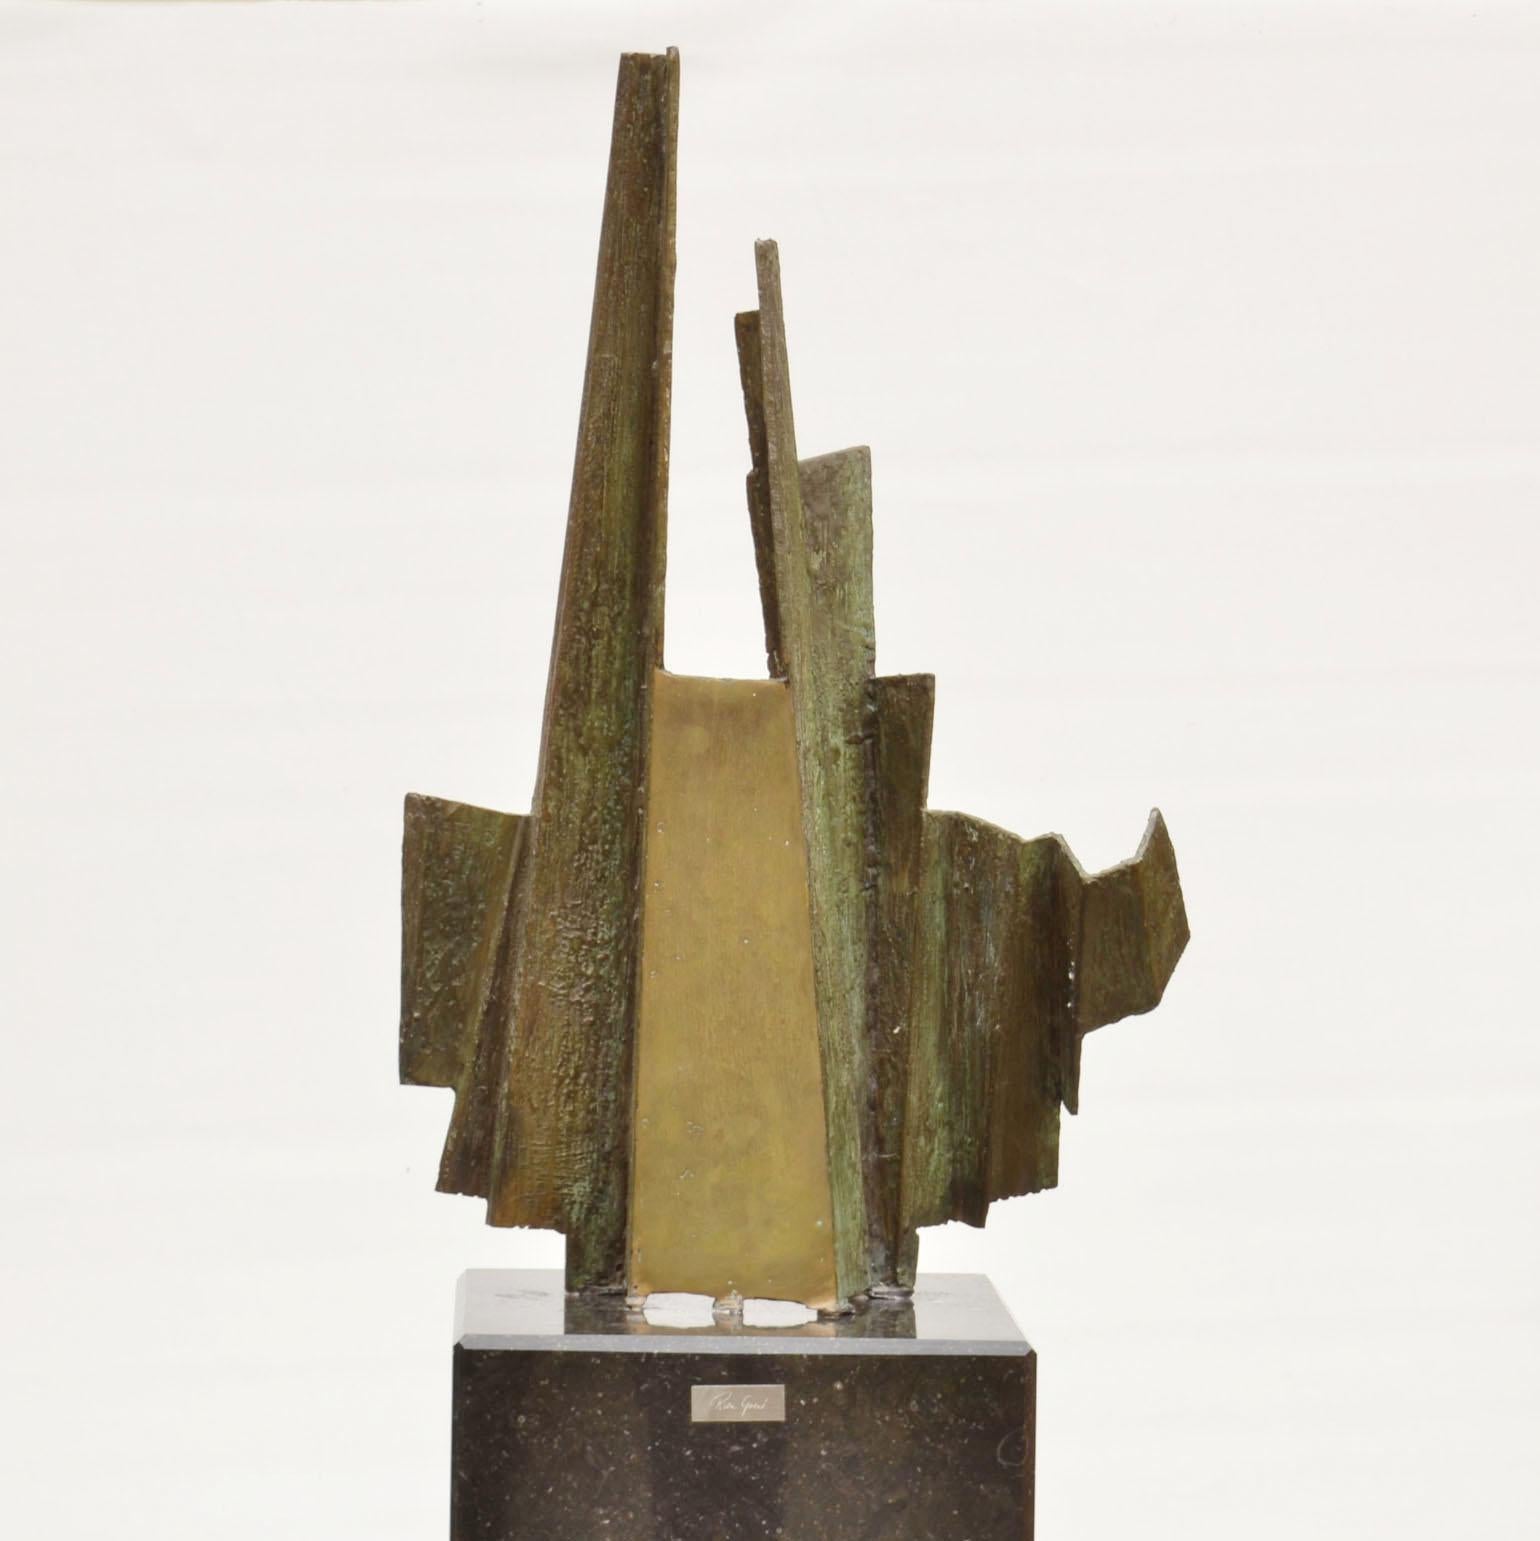 Eine von zwei brutalistischen abstrakten Skulpturen des niederländischen Künstlers Rien Goené (1929-2013) um 1980, signiert. Die asymmetrische, ziehharmonikaförmige Bronzeskulptur ist mit einer hellgrünen Patina versehen. An den Stellen, an denen